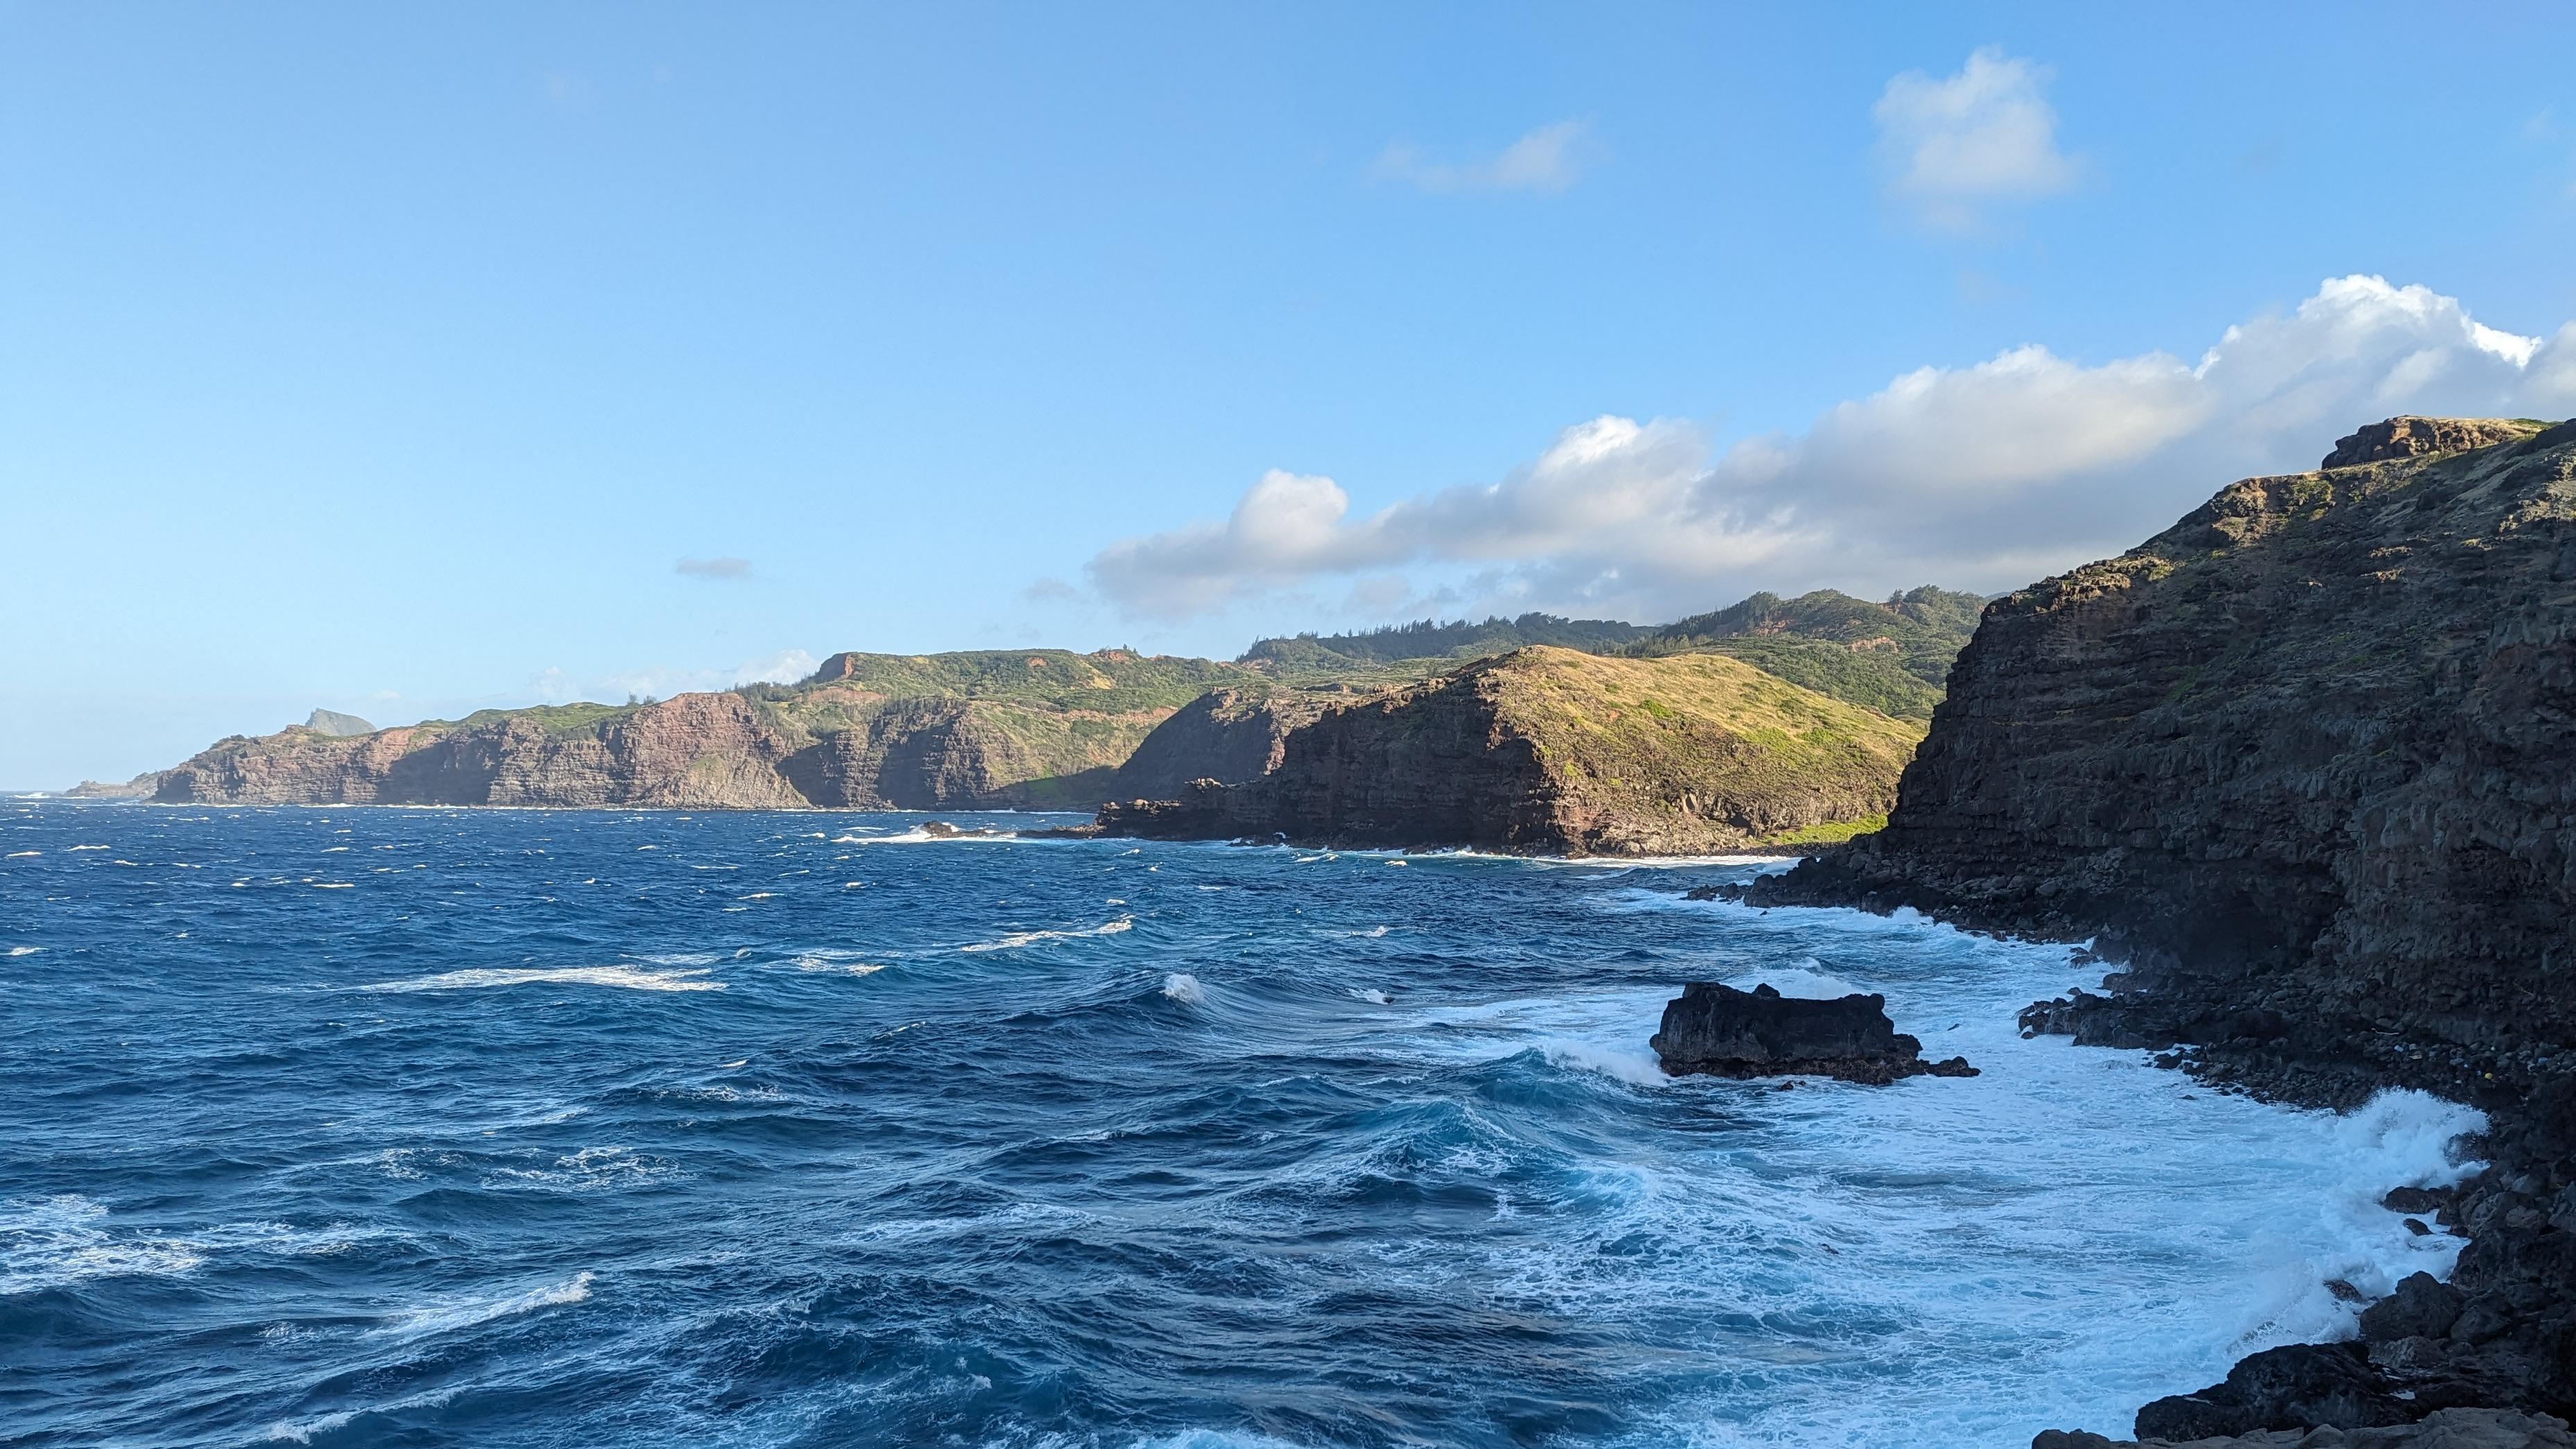 A photograph of the sea coast in Maui, Hawaii.